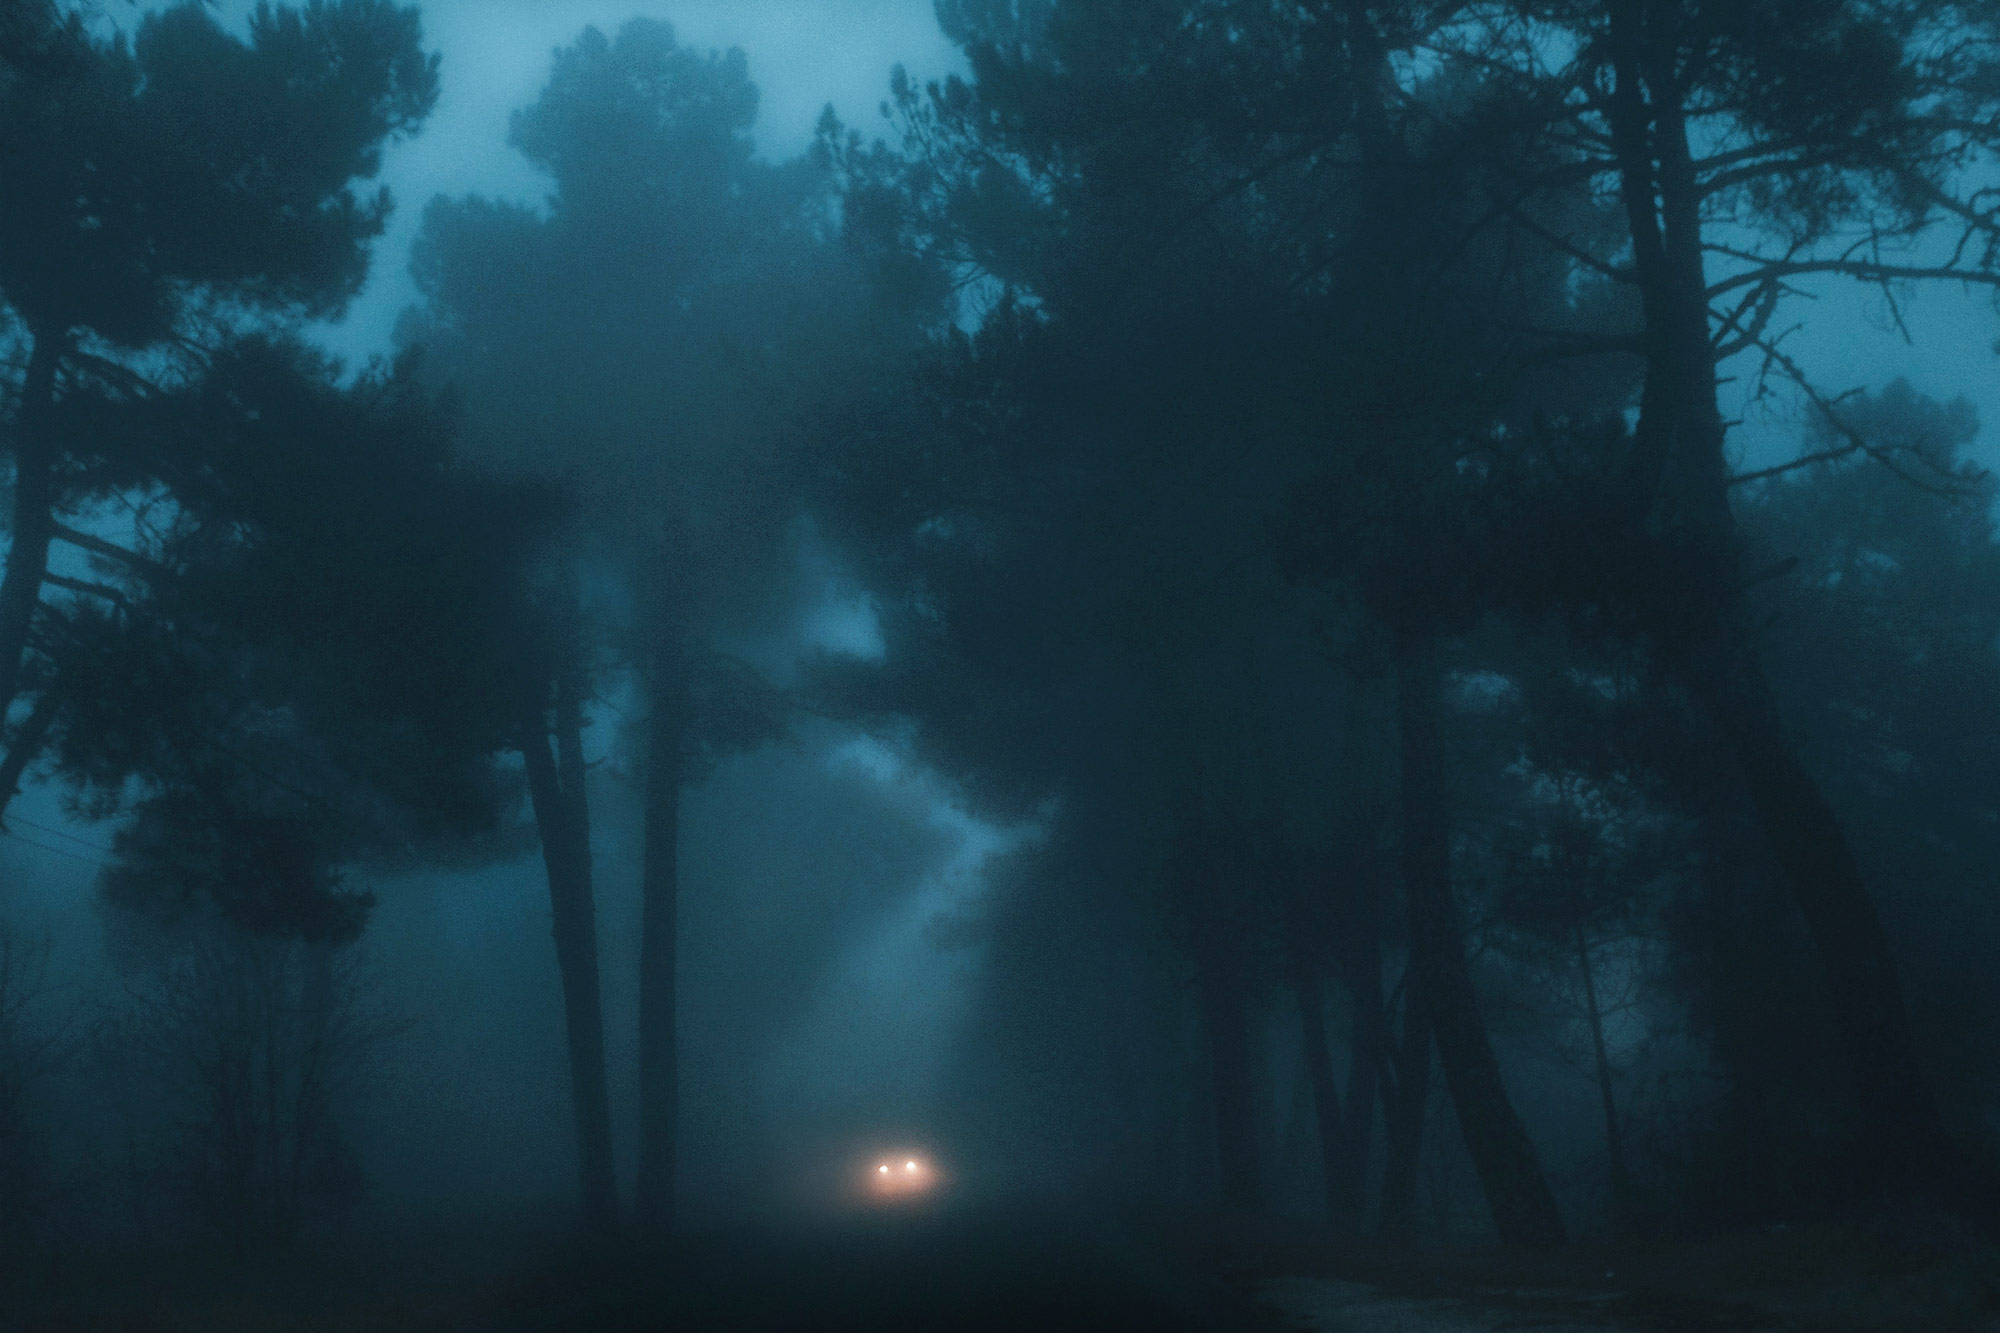 夜色迷茫大雾滂沱 孤独深邃的城市与自然